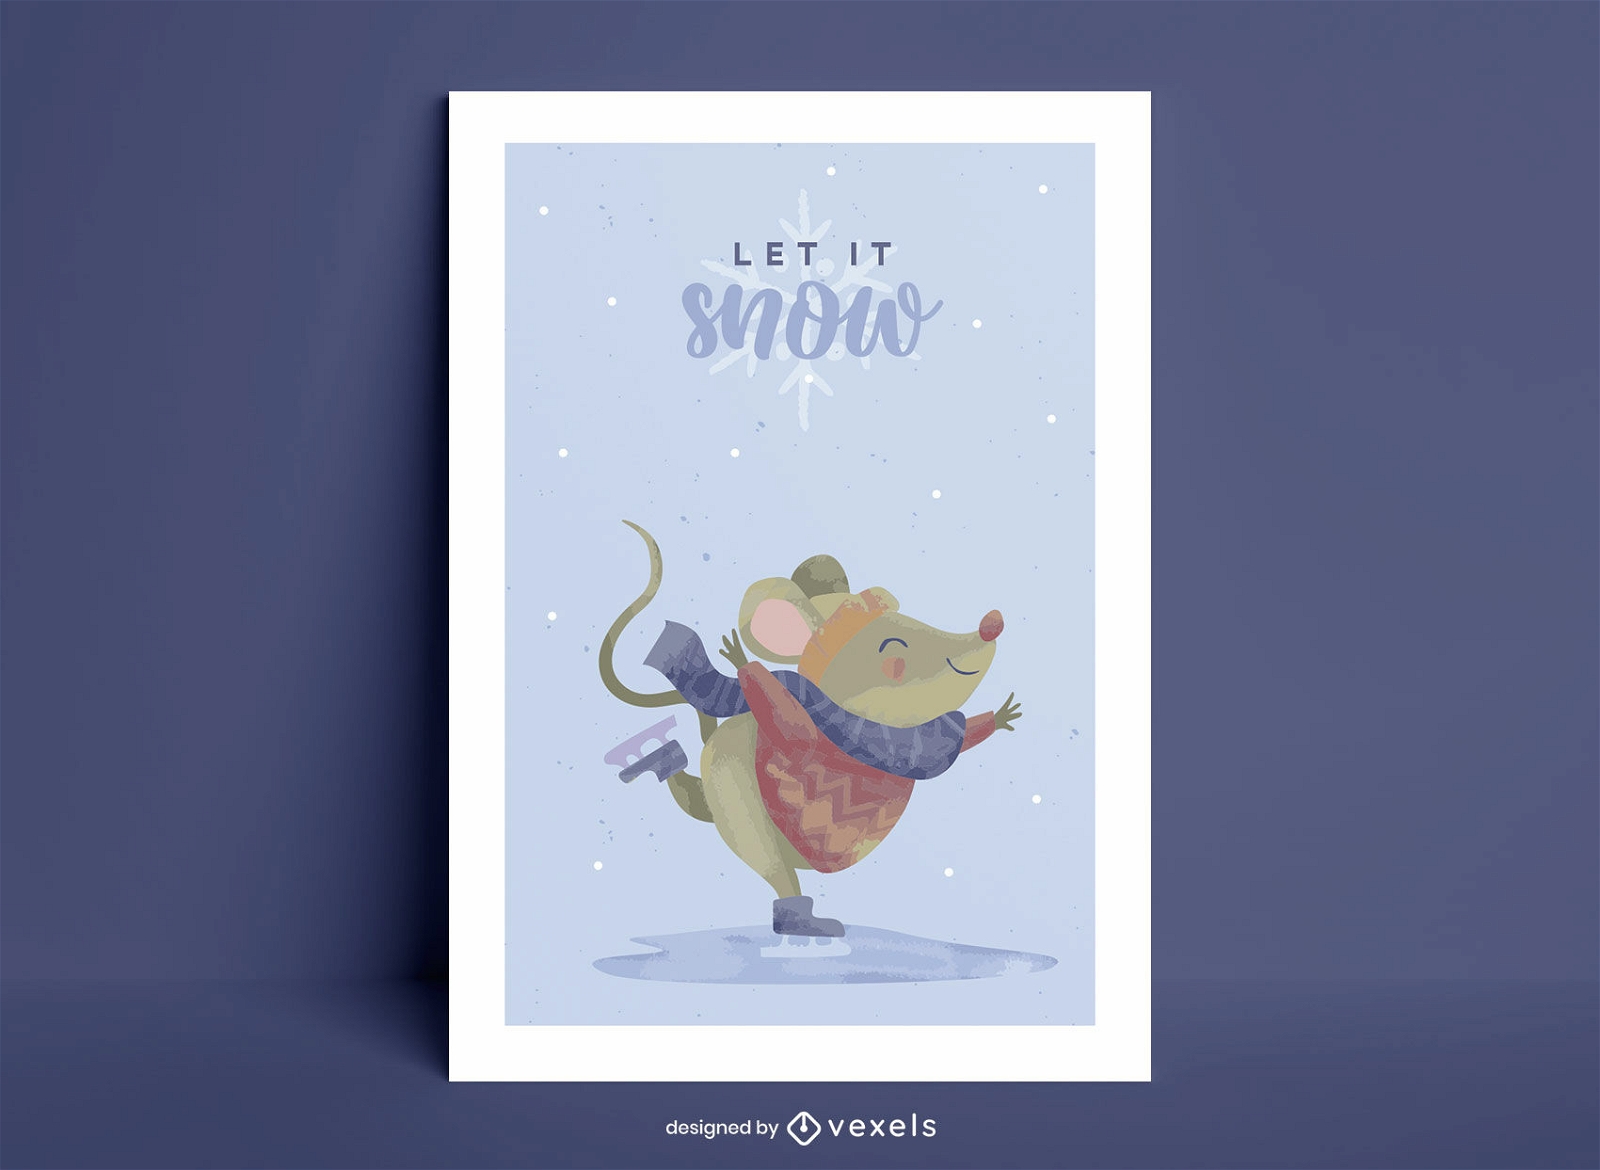 Let it snow mouse cita diseño de cartel